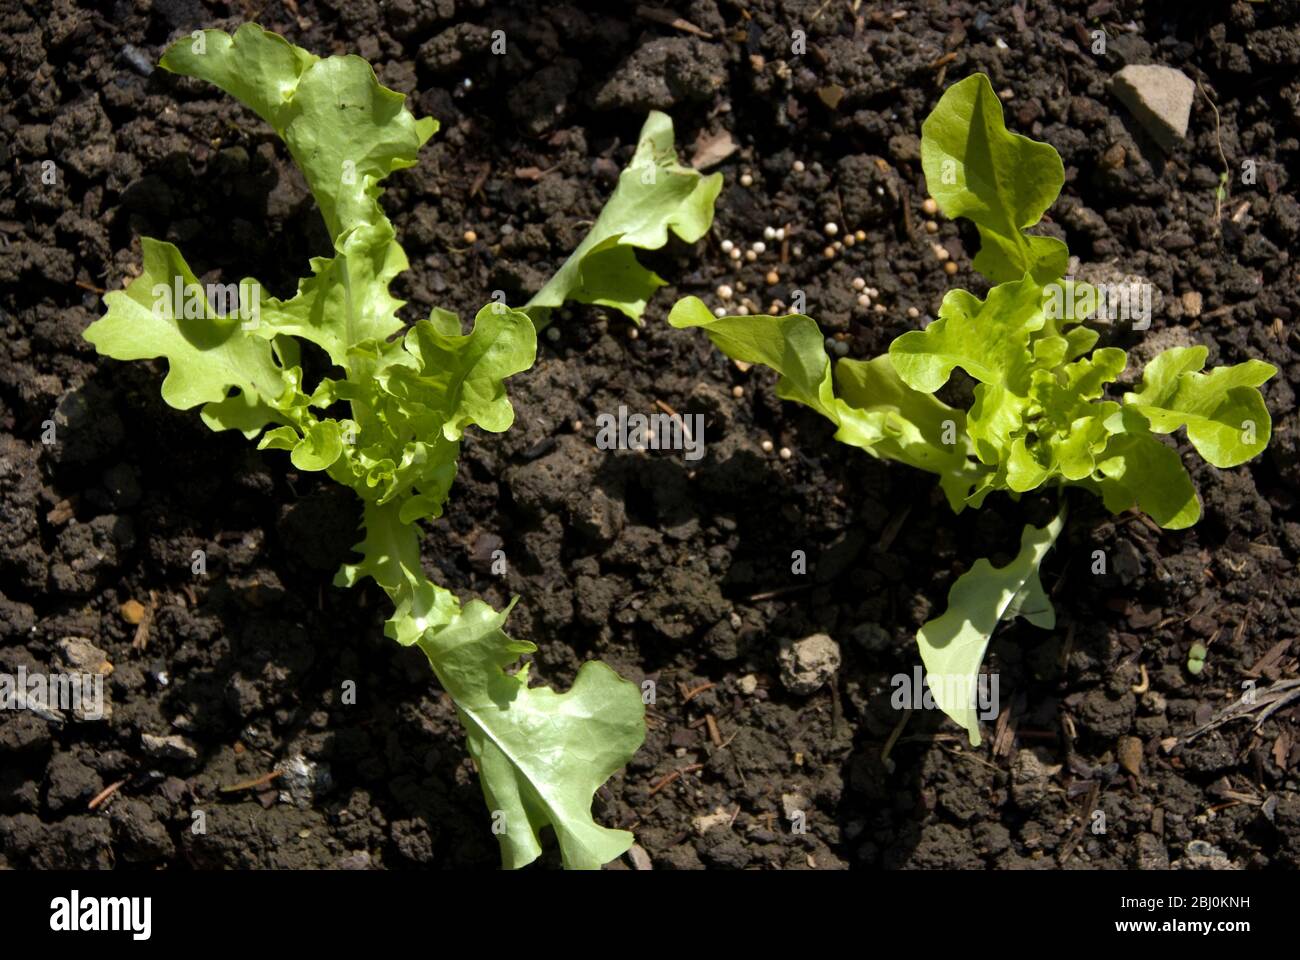 Salat Sämlinge wachsen in dunkelreichen Gartenboden, Kent UK - Stockfoto